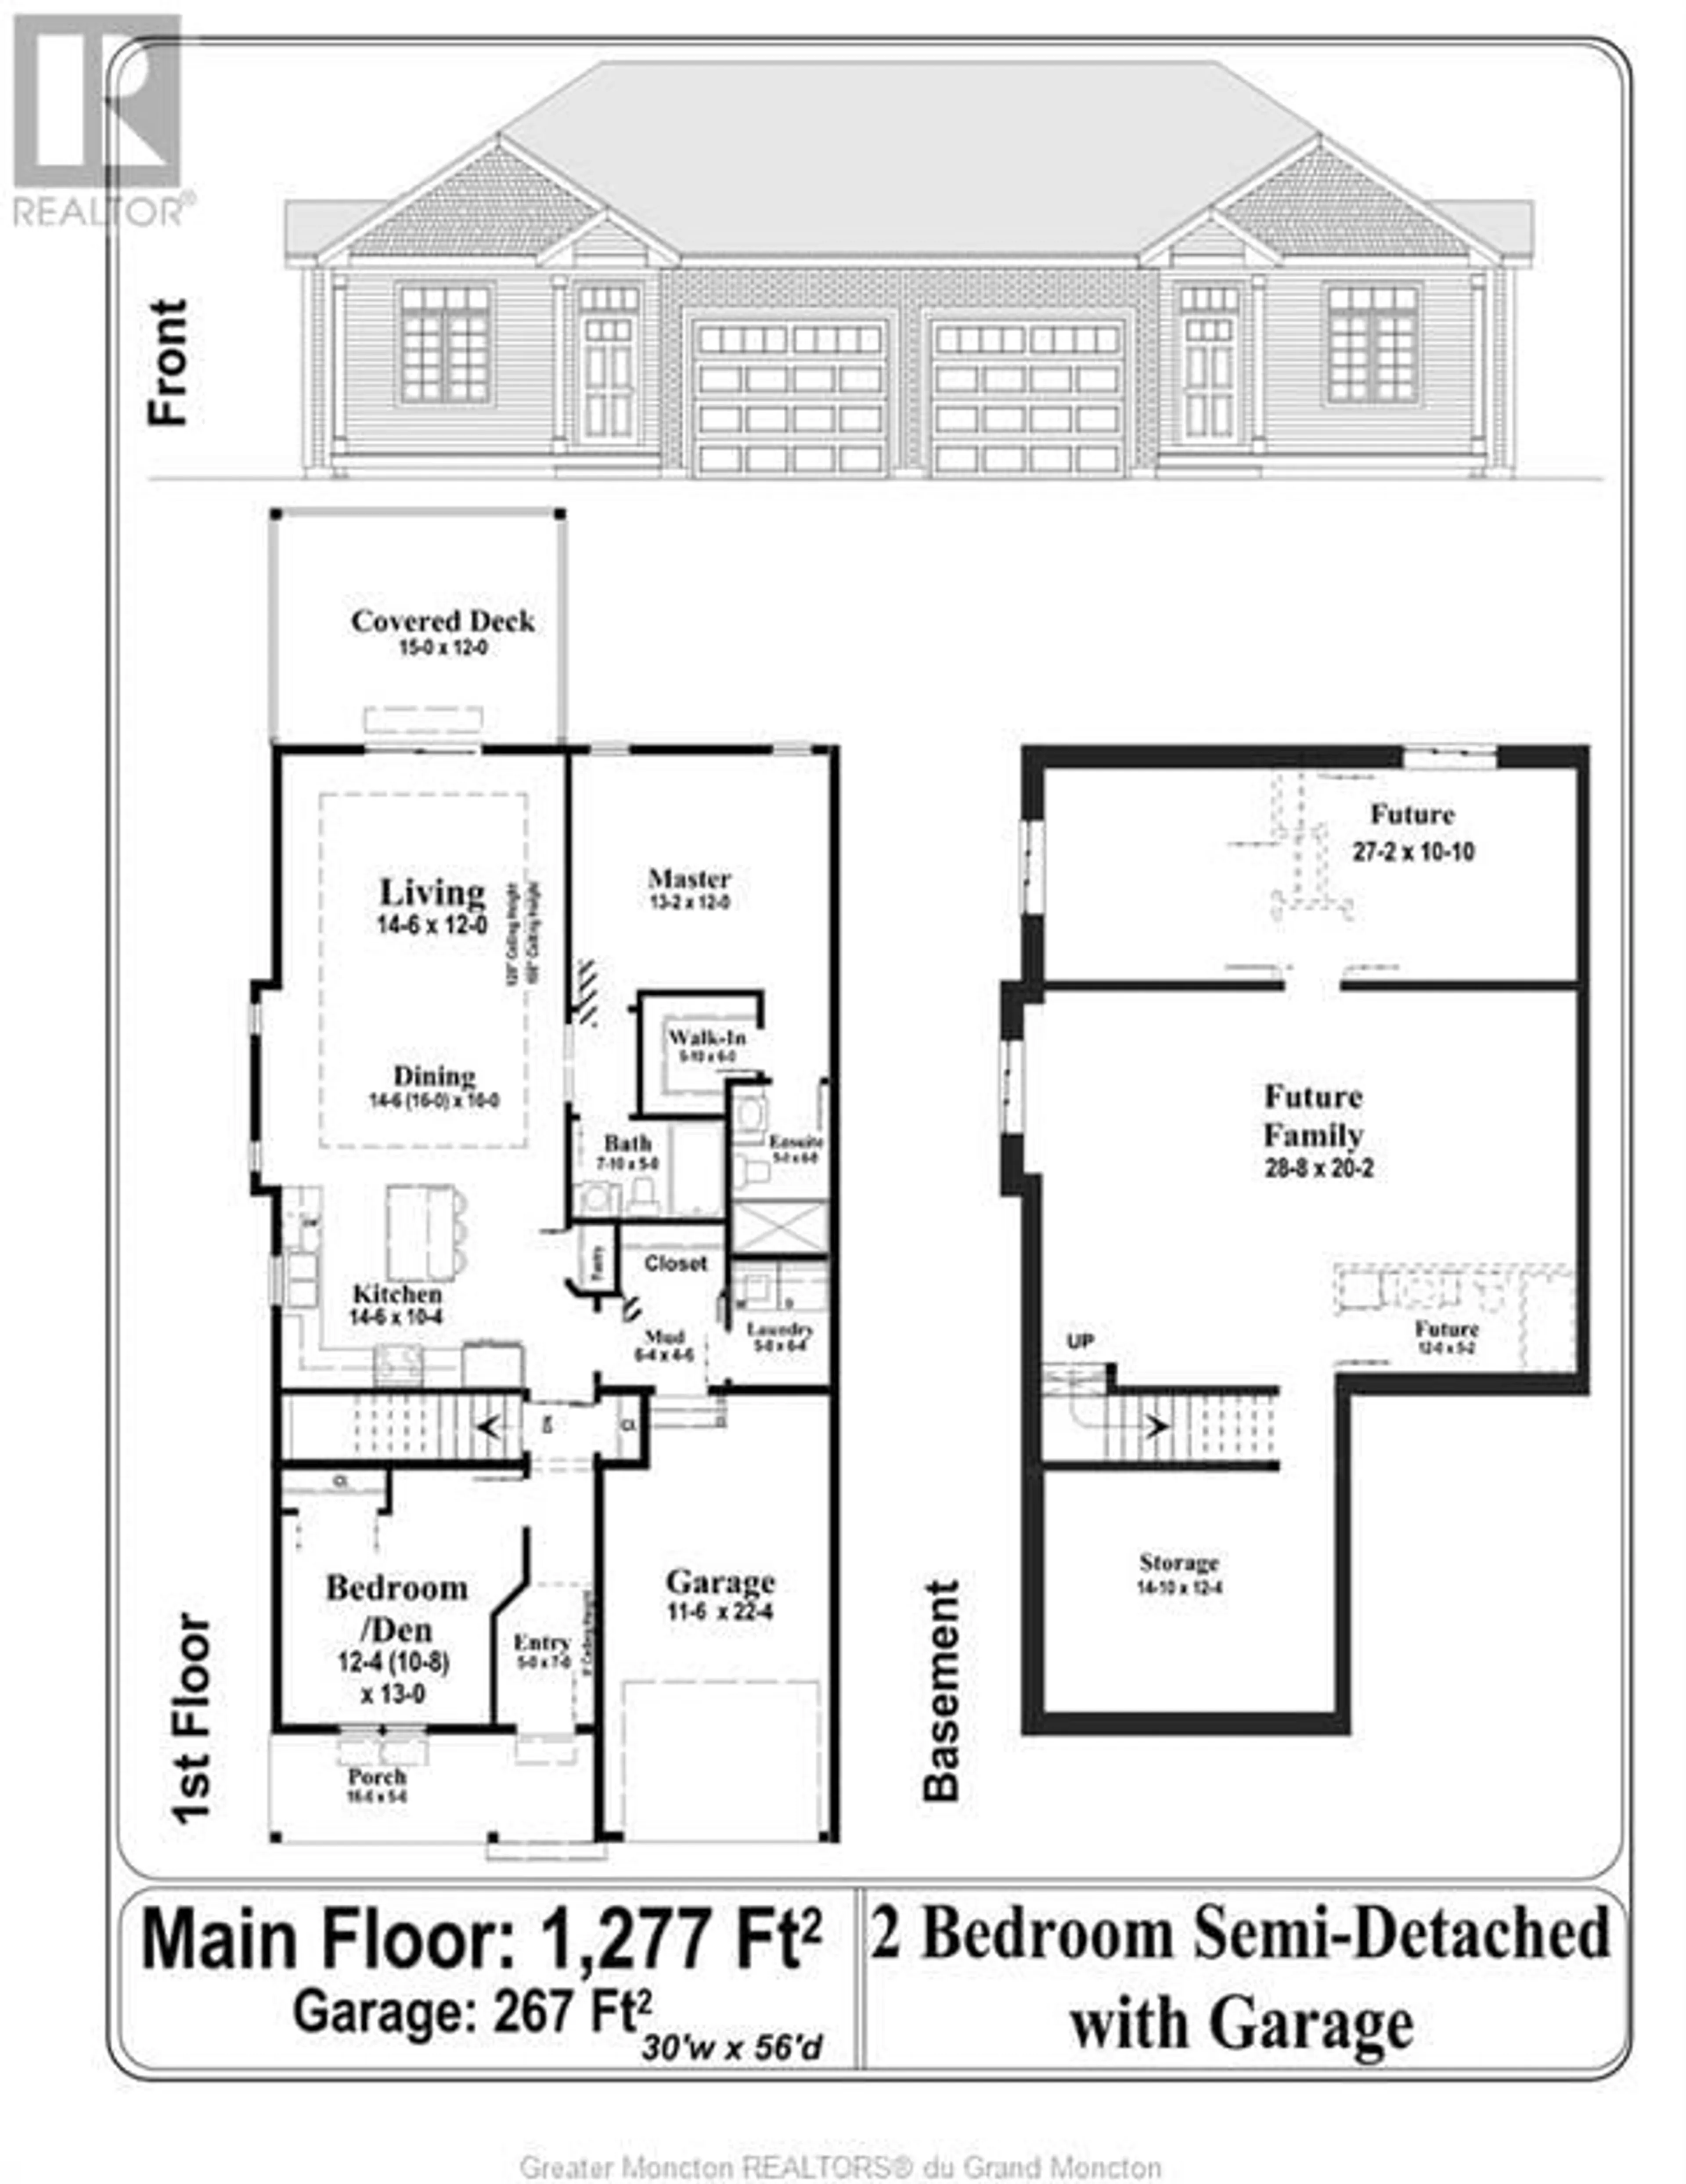 Floor plan for 552 Royal Oaks, Moncton New Brunswick E1H3S7